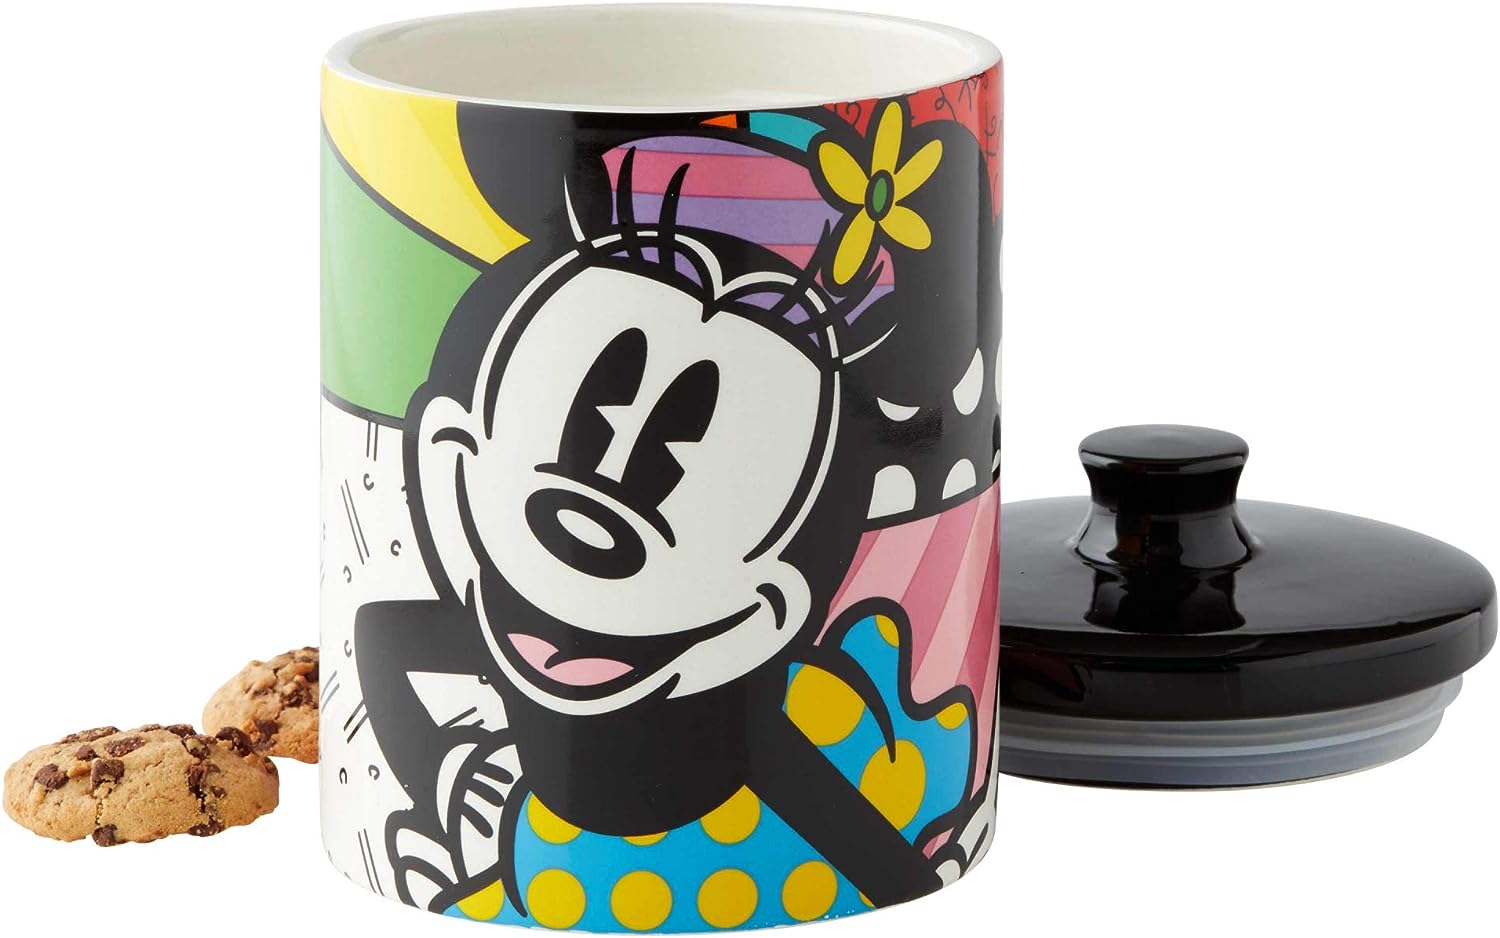 Minnie-Mouse-Keksdose-Disney-by-Britto-berlindeluxe-miiniemaus-deckel-offen